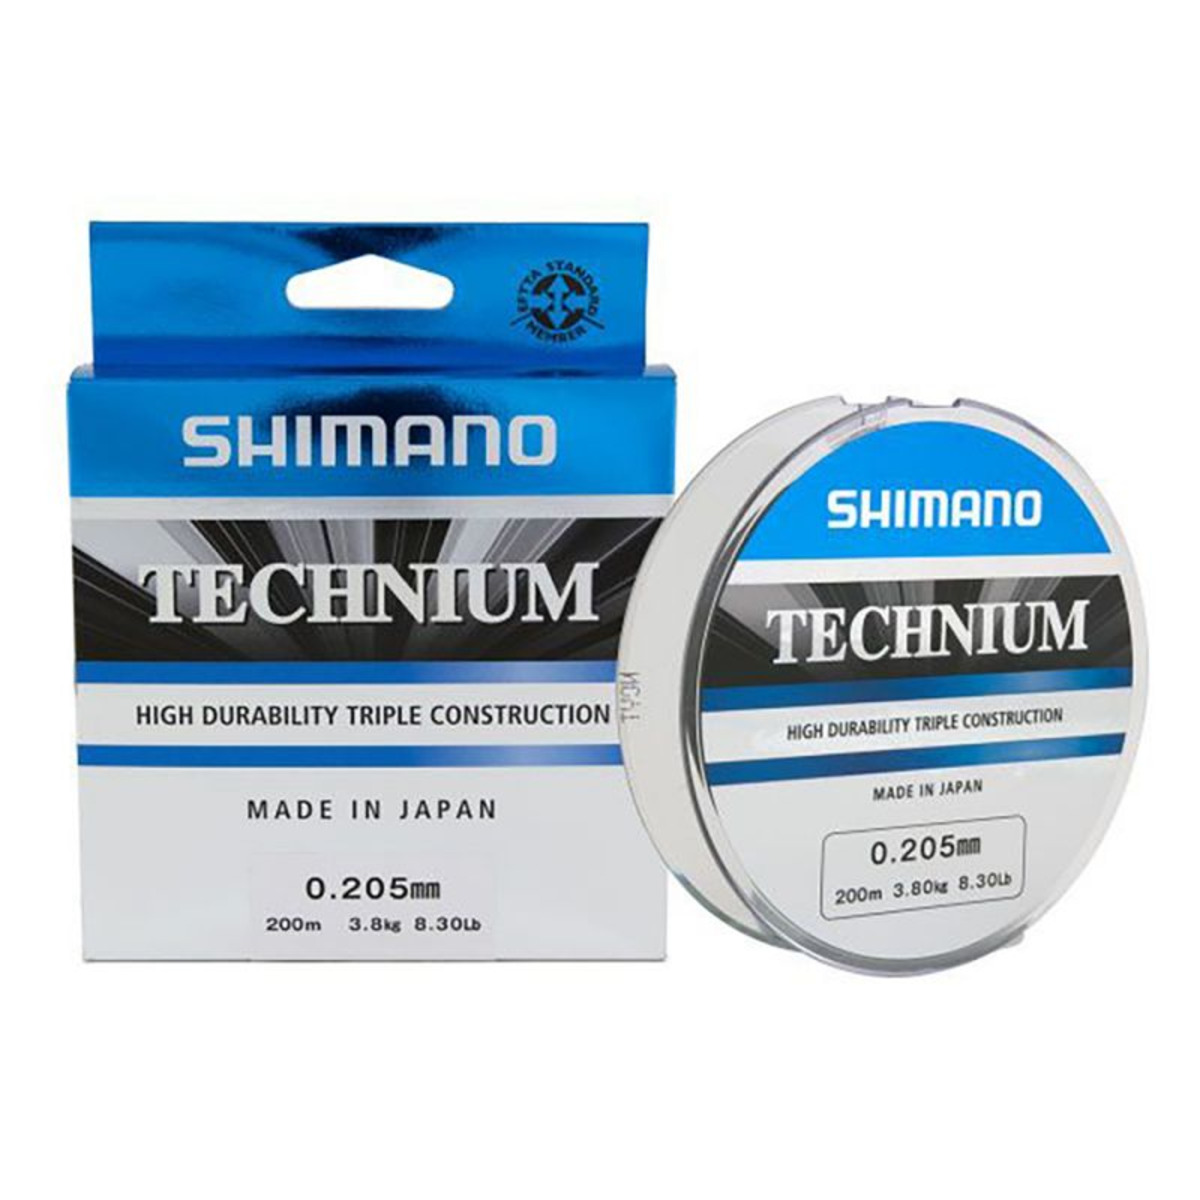 Shimano Technium 200 m - 200 m - 0.285 mm